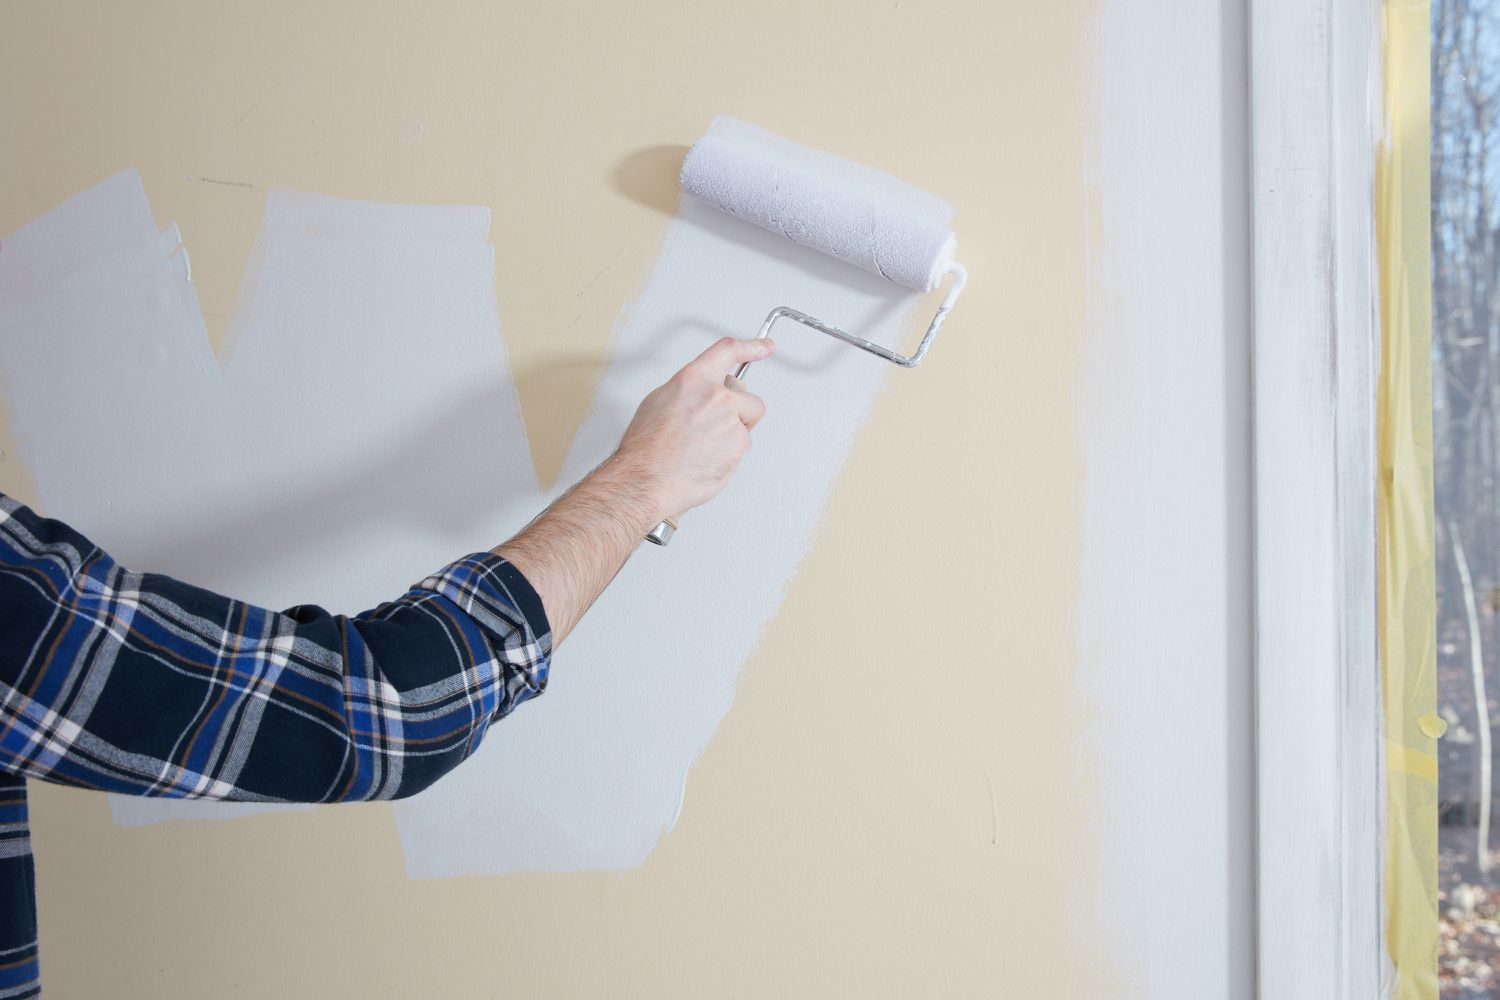 Rouleau de peinture appliquant de la peinture blanche en diagonale sur le mur